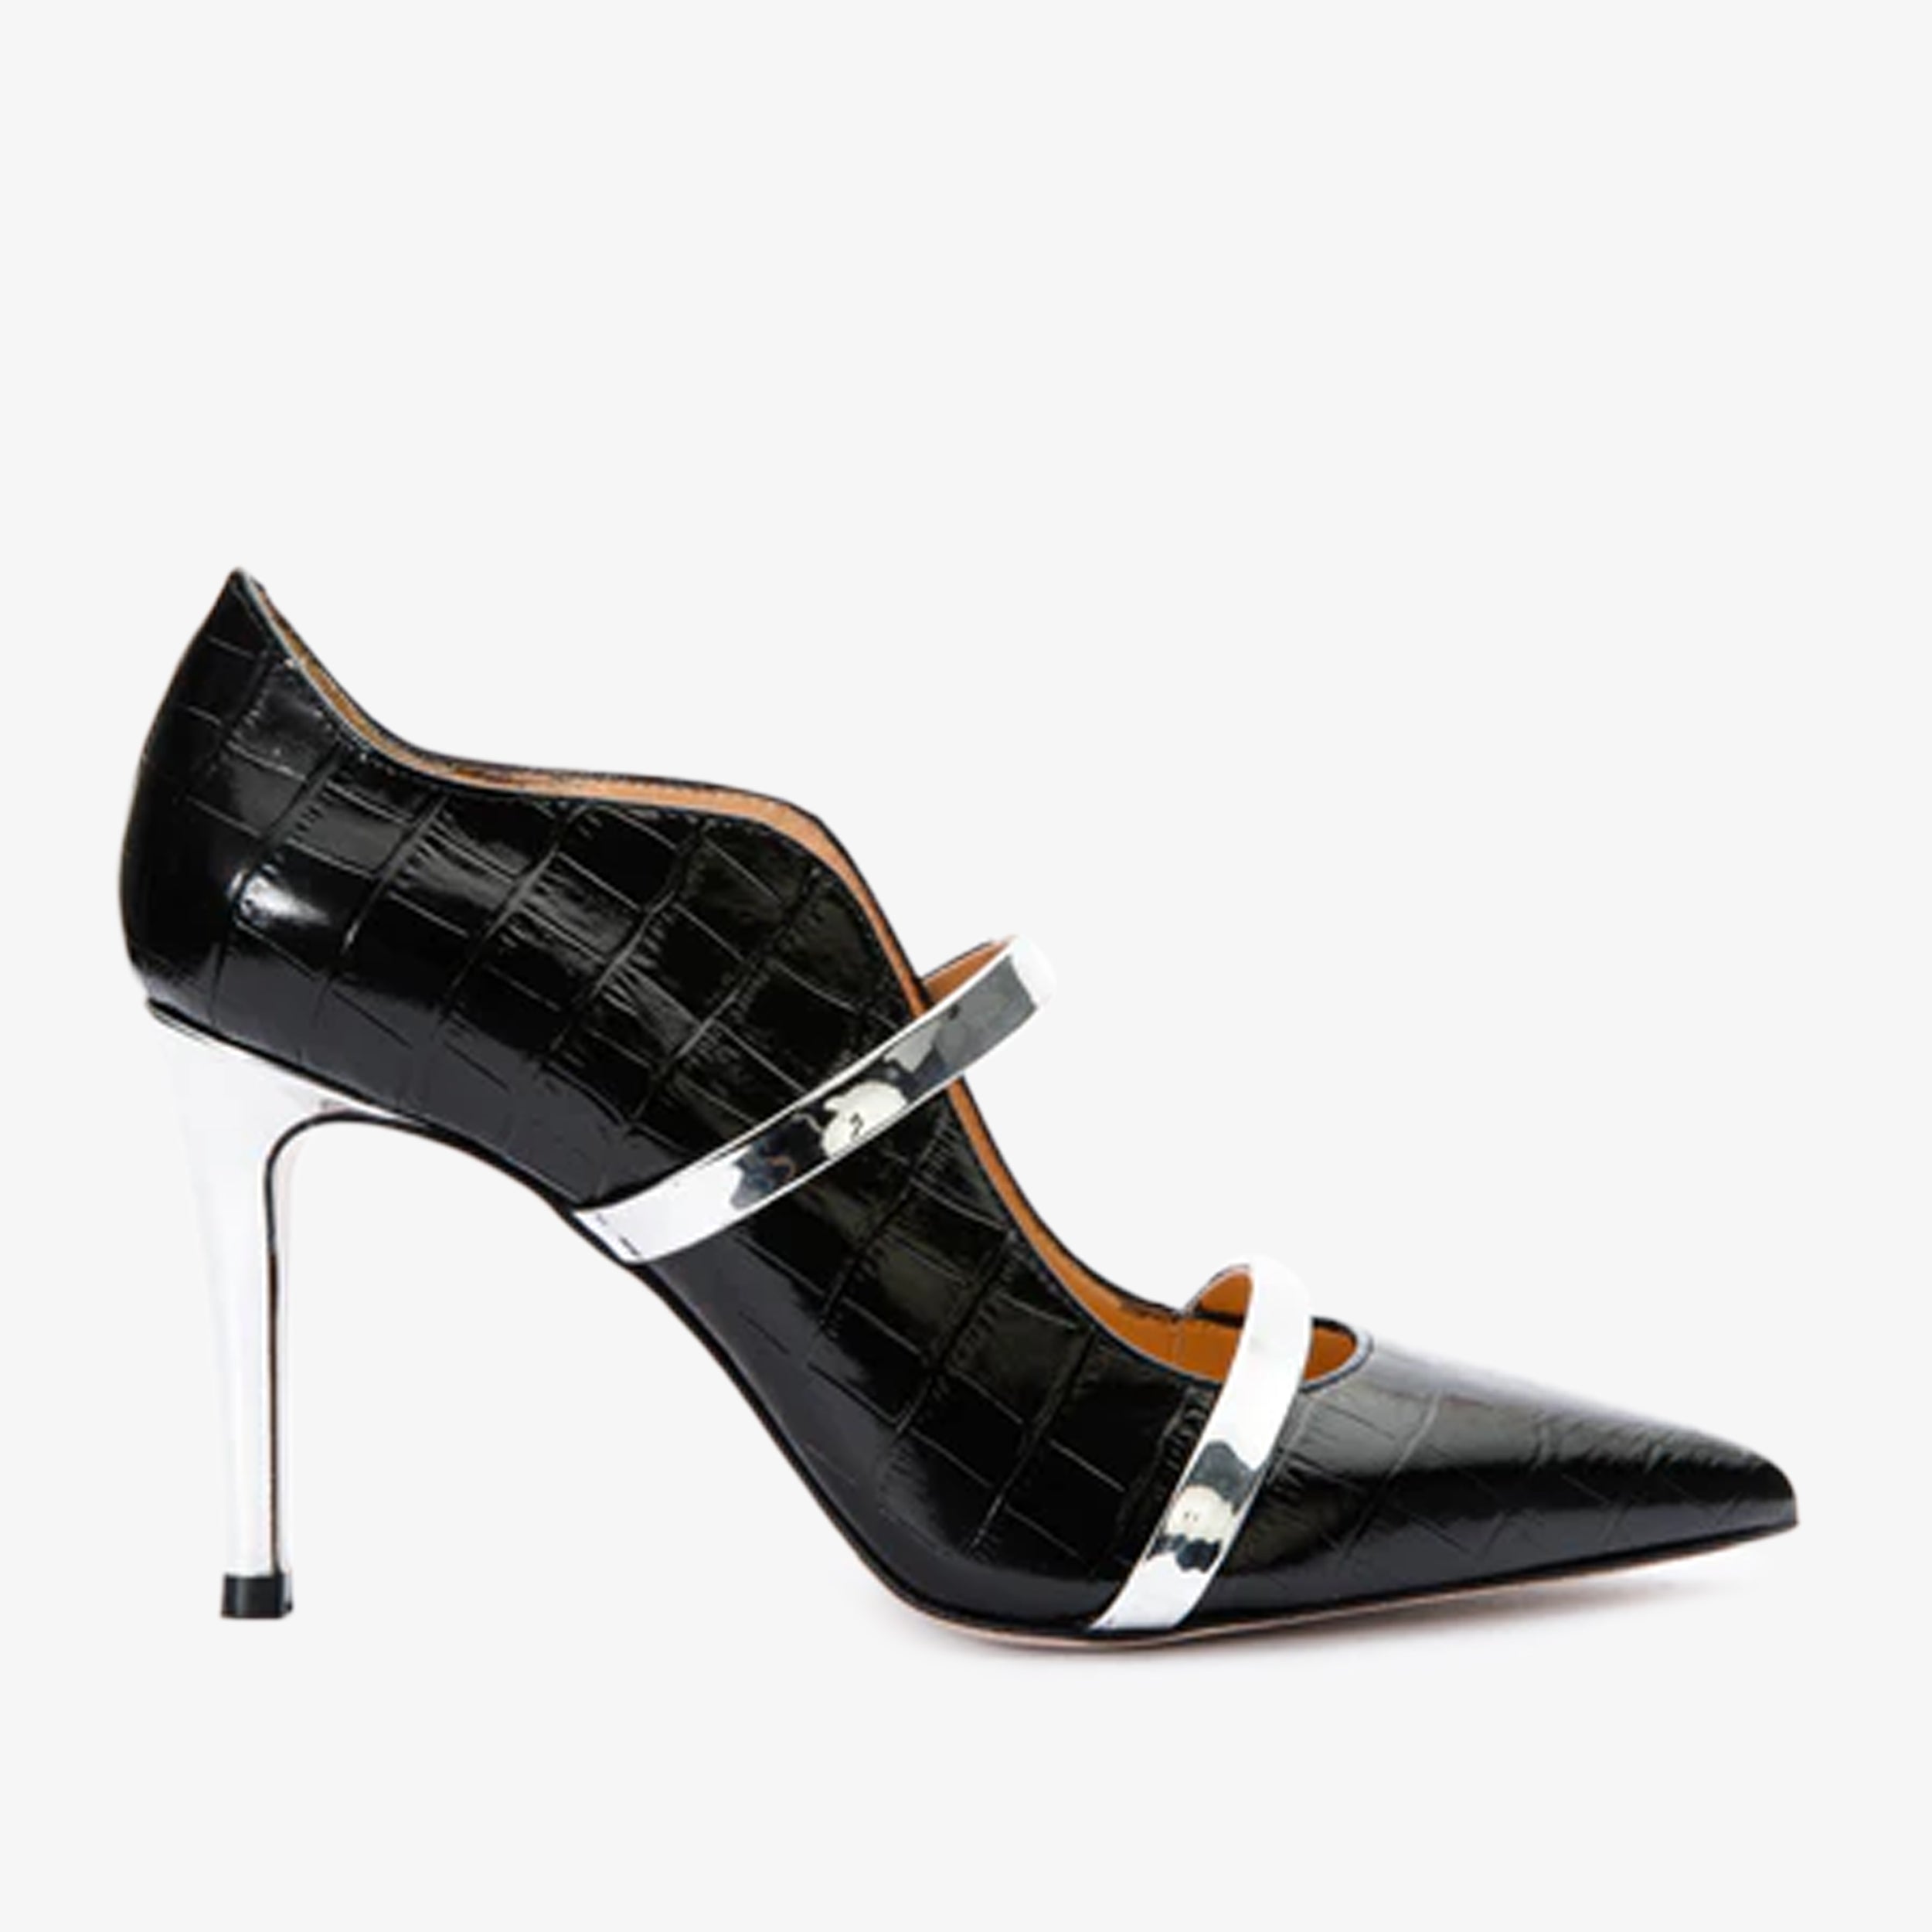 The Annapolis Black Patent Leather Pump Women Shoe